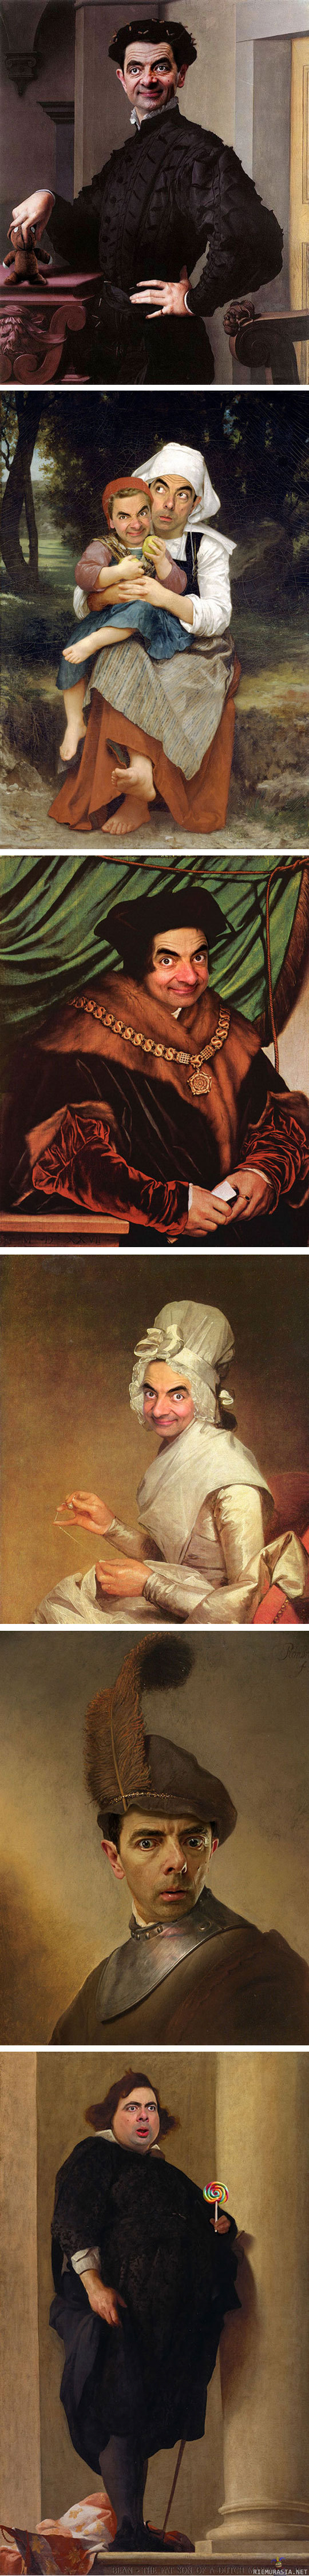 Rowan Atkinsonin monet kasvot - Rowan Atkinsonin naama taideteoksissa